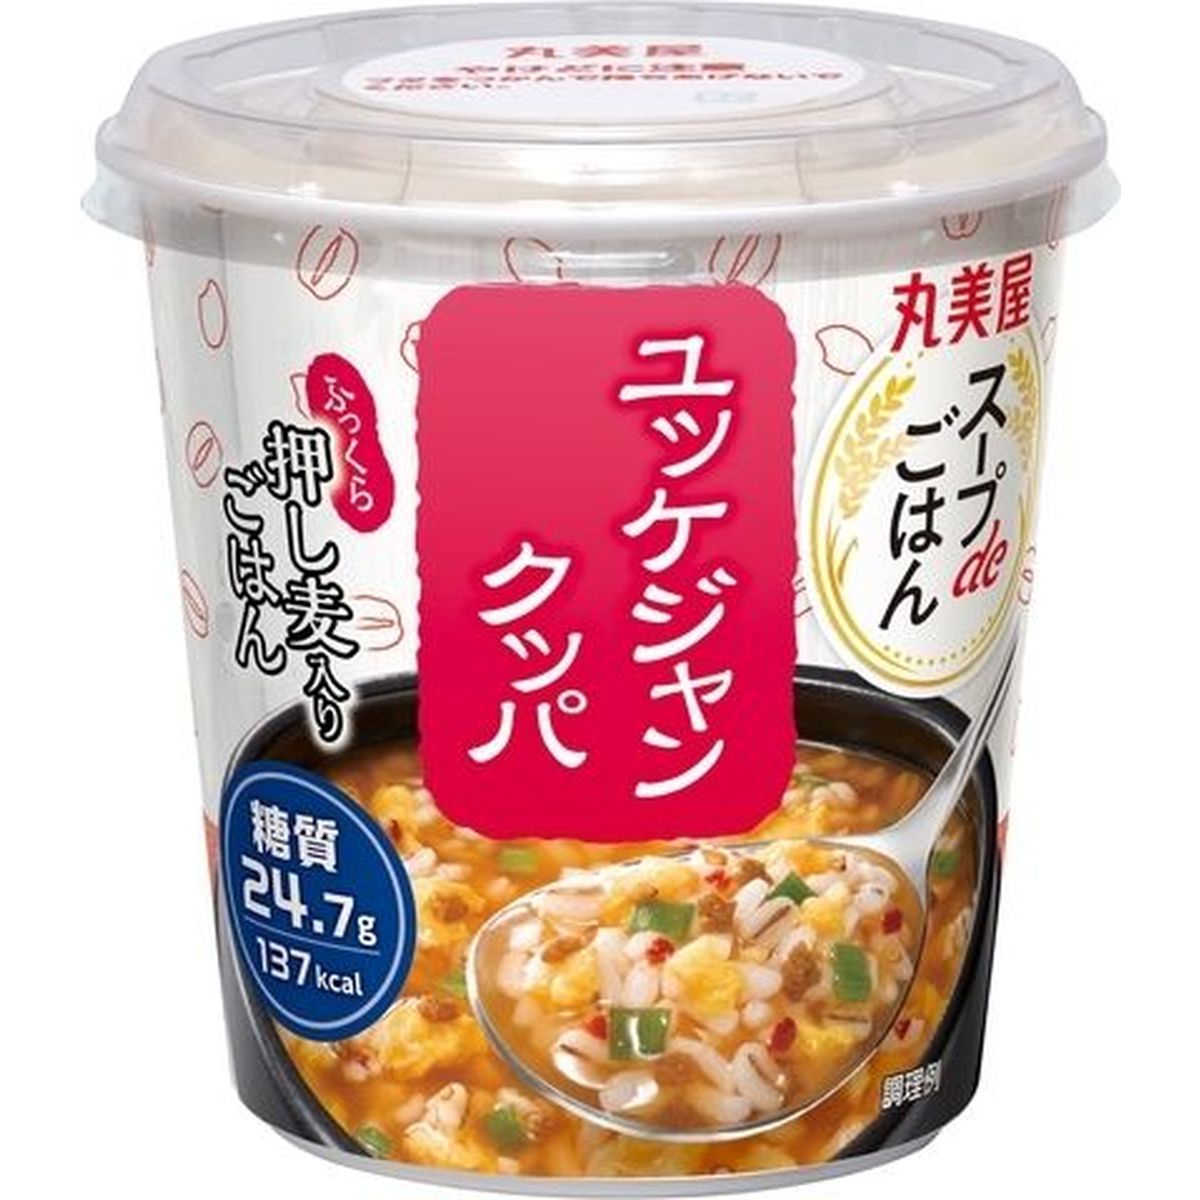 【6個入リ】丸美屋スープdeゴハンユッケジャンクッパ 69.8g